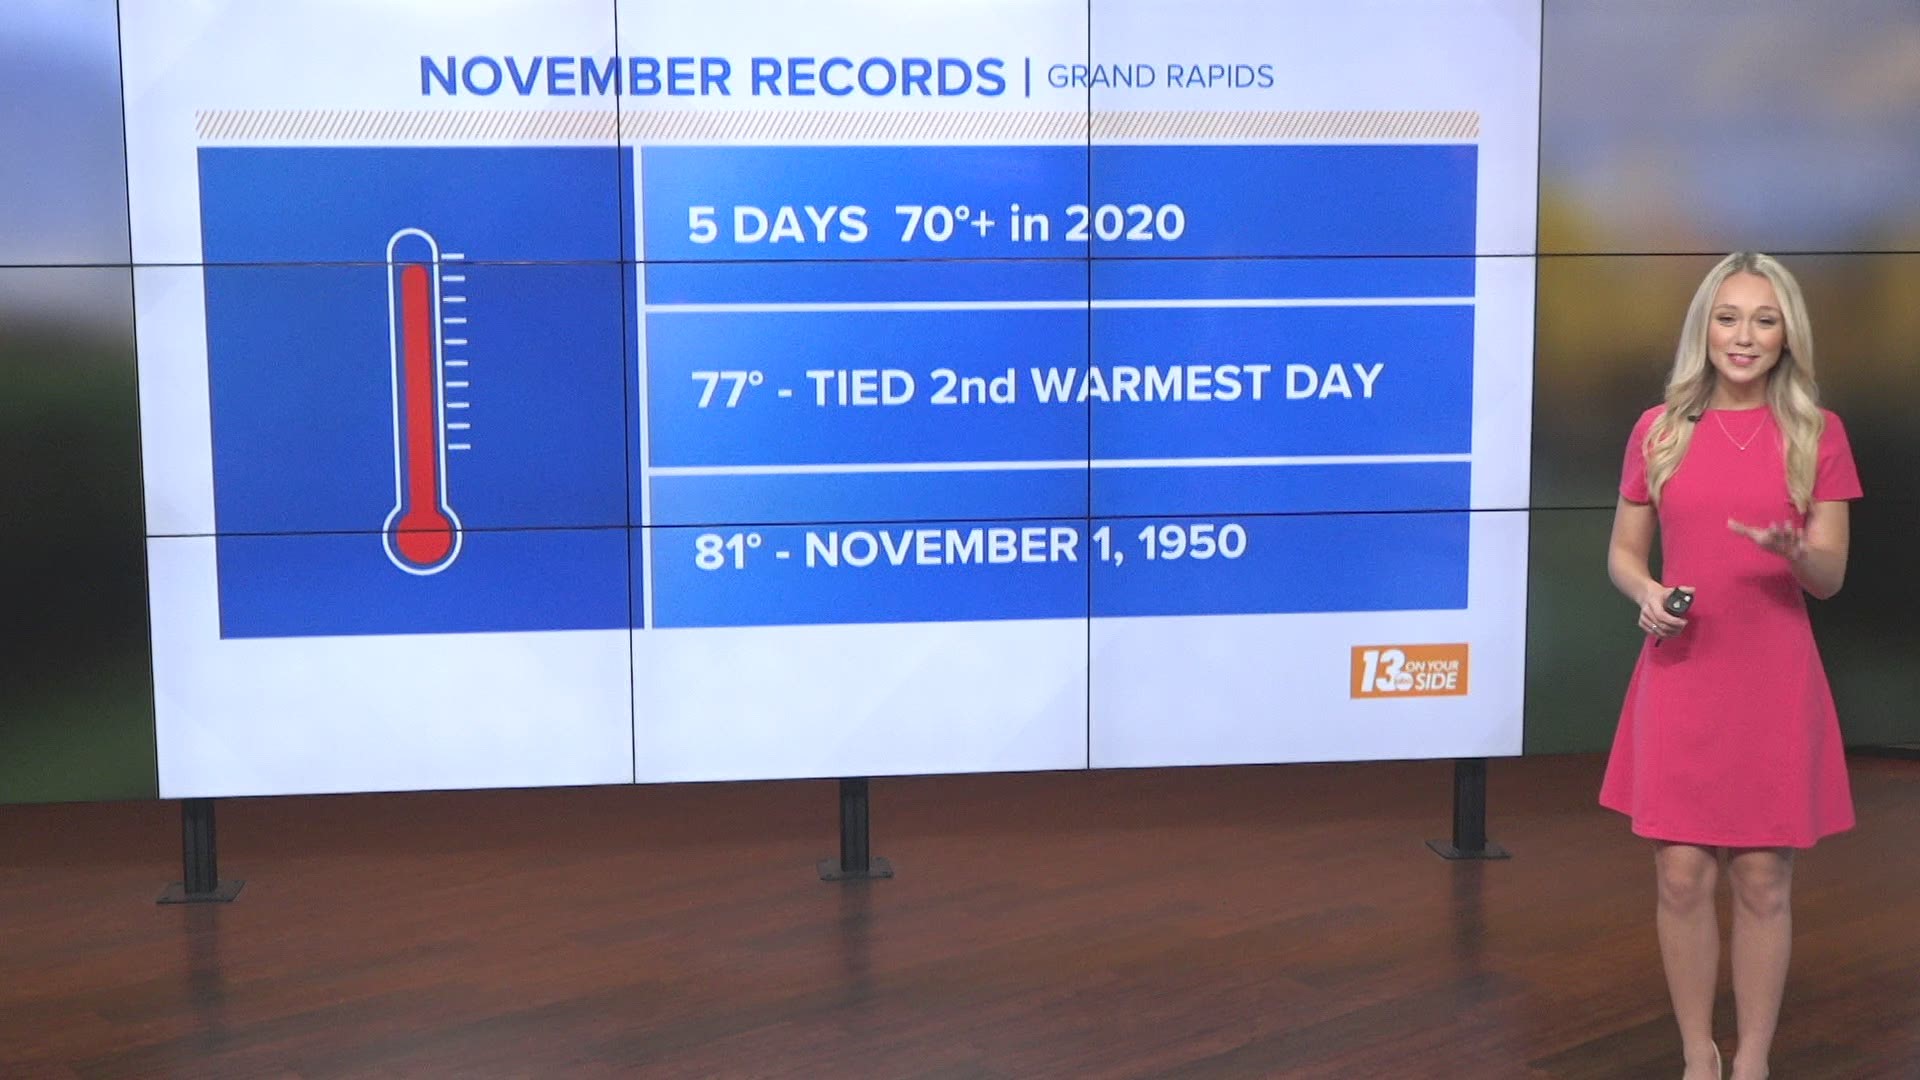 Our unseasonably warm pattern breaks numerous records!